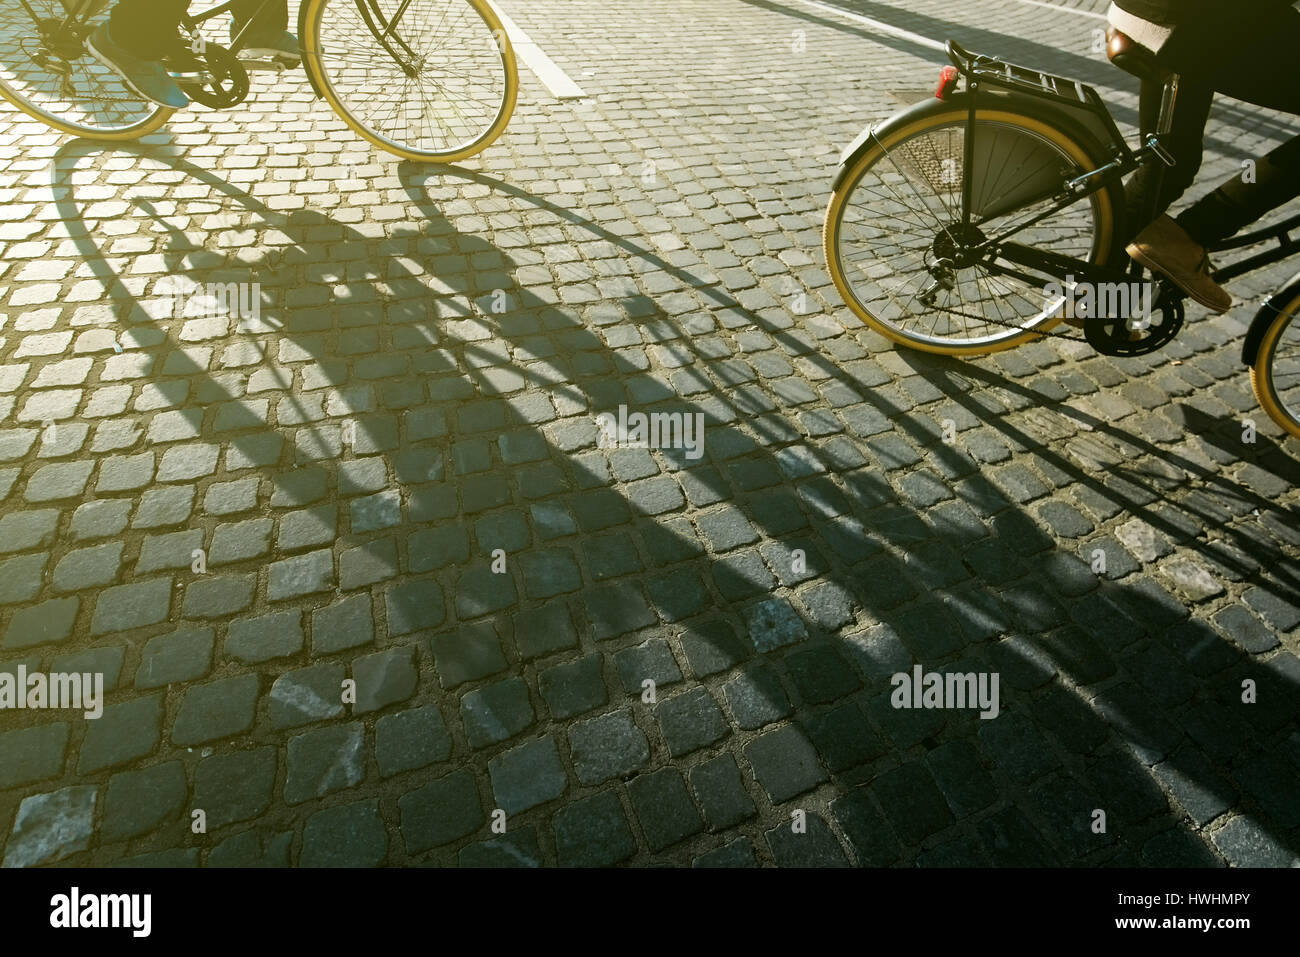 Les cyclistes de la ville, les gens la bicyclette sur les routes pavées, l'ombre de la personne sur le vélo Banque D'Images